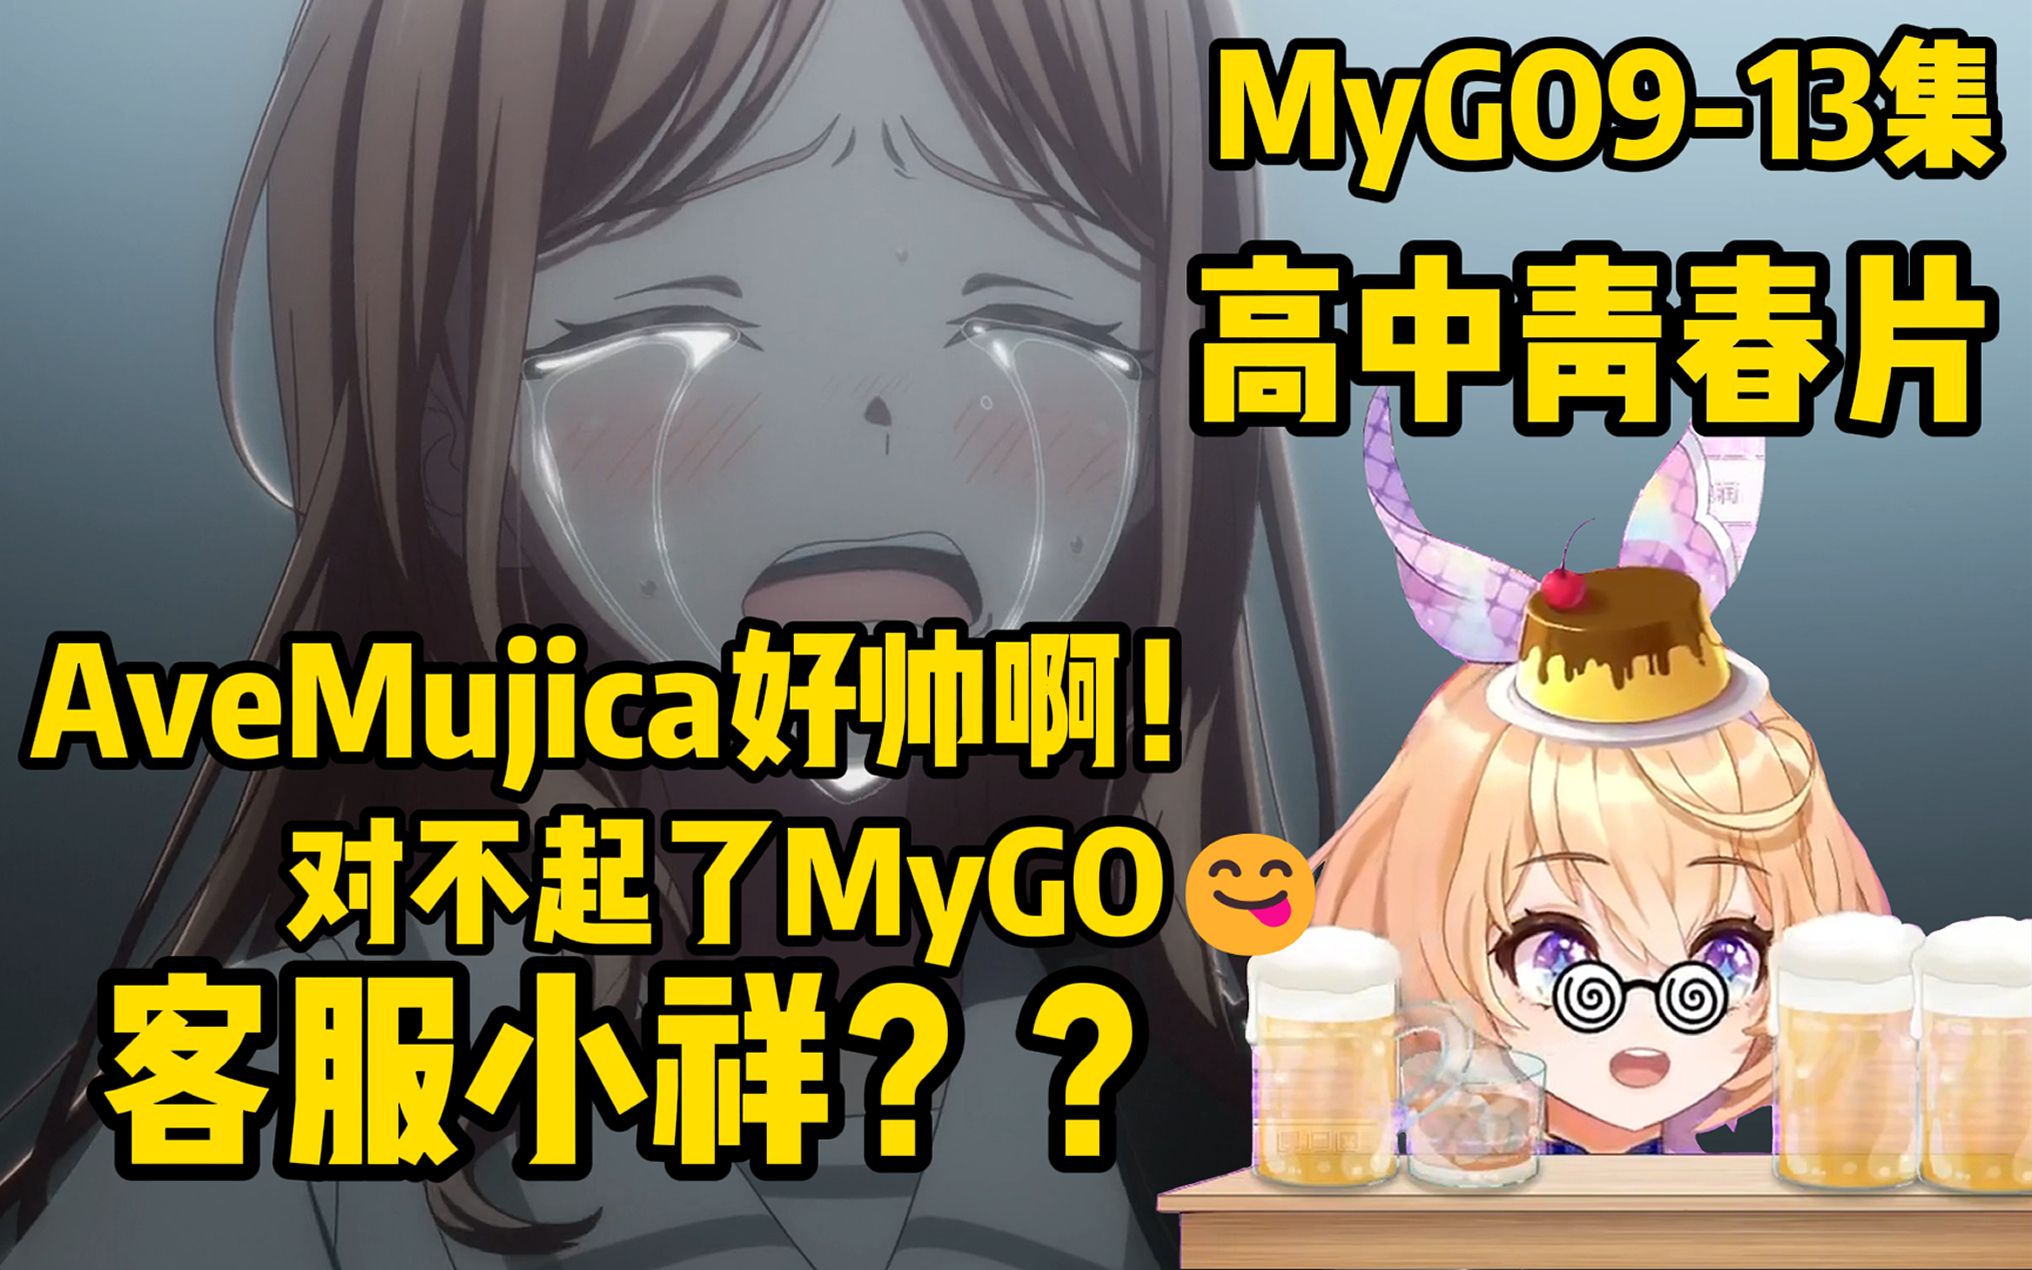 对不起我的选择是……【MyGO9-13Reaction】